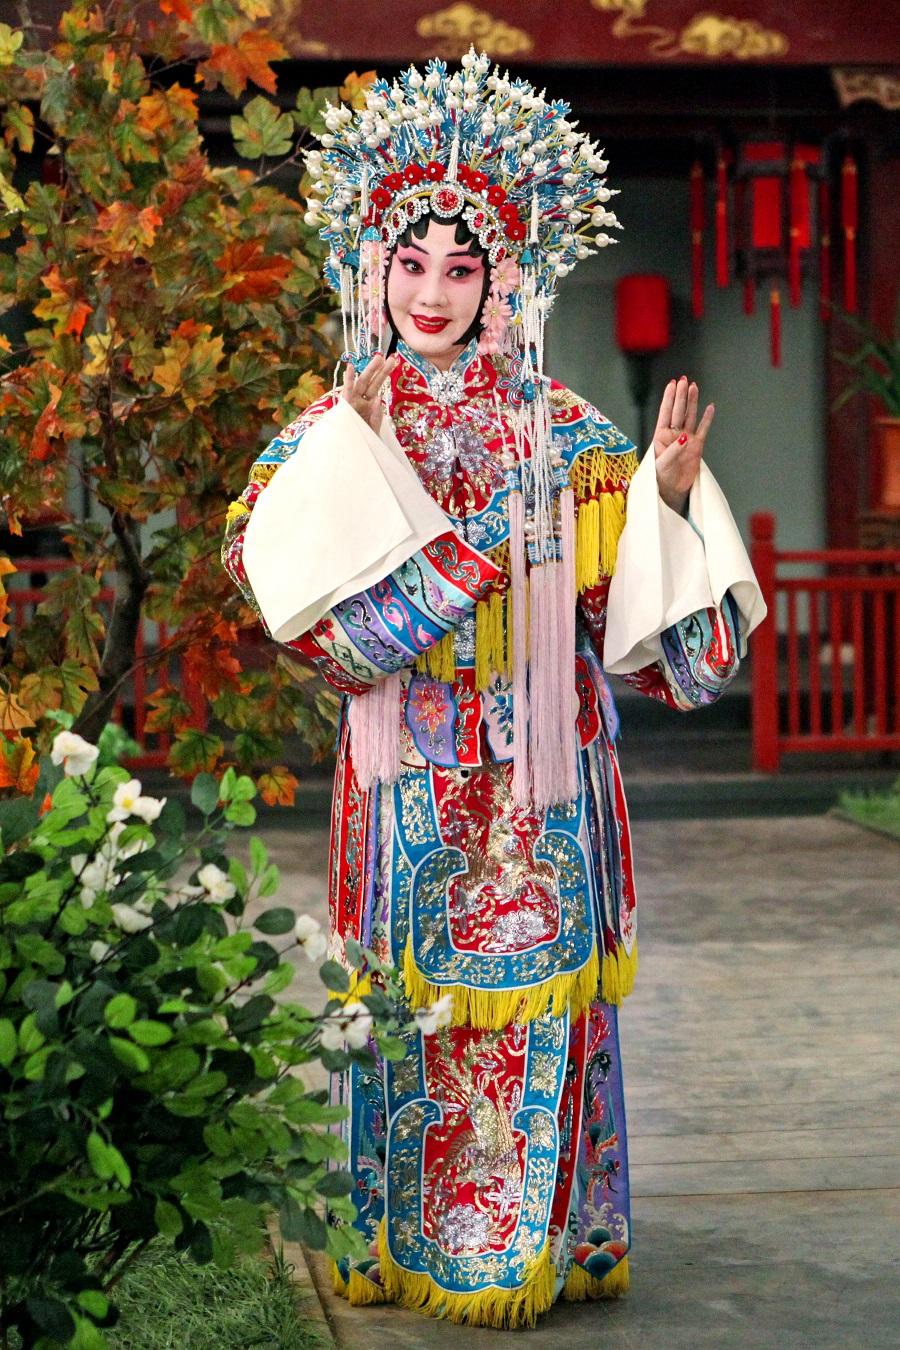 由康樂及文化事務署主辦的中國戲曲節（戲曲節）今年於六月至十月期間帶來高水平戲曲節目。圖為中國戲劇梅花奬得主王蓉蓉，她將隨北京京劇院劇組赴港演出，為今年的戲曲節掀開序幕。